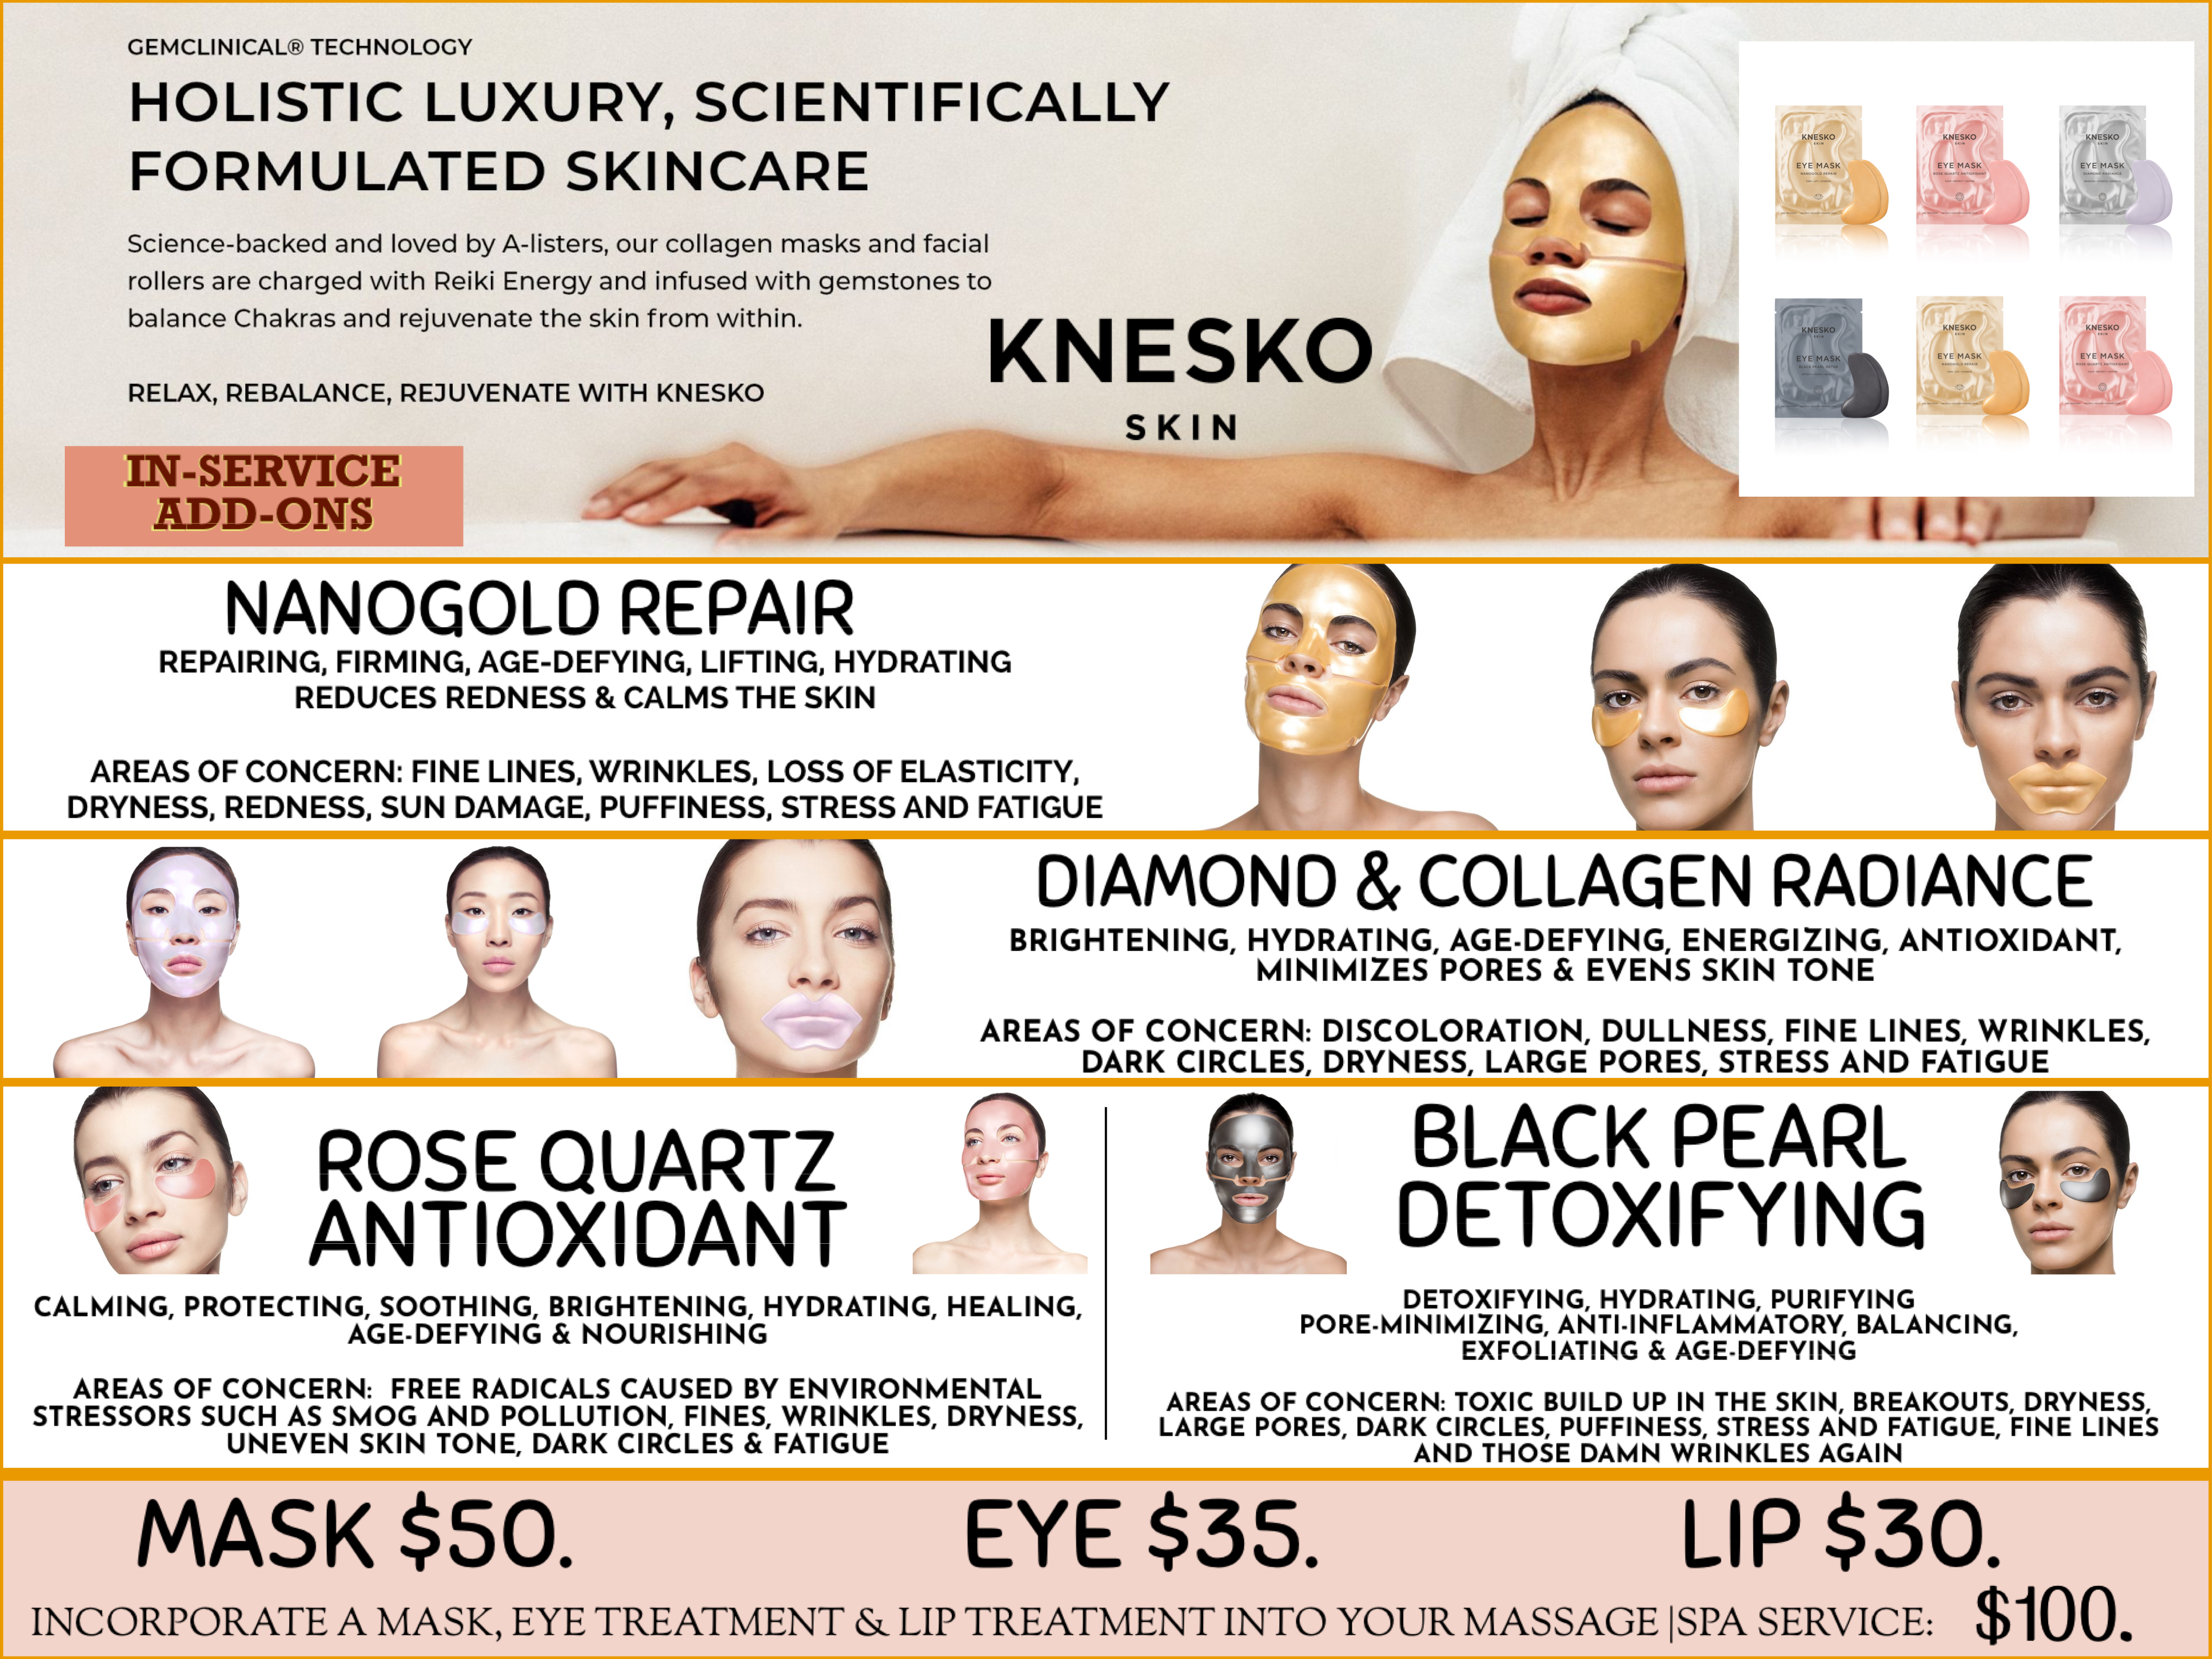 KNESKO Facial Masks, Eye Treatments & Lip Treatments @ Bodies Kneaded Massage Spa South Beach Miami Since 1996 www.BodiesKneaded.com 305.535.2424